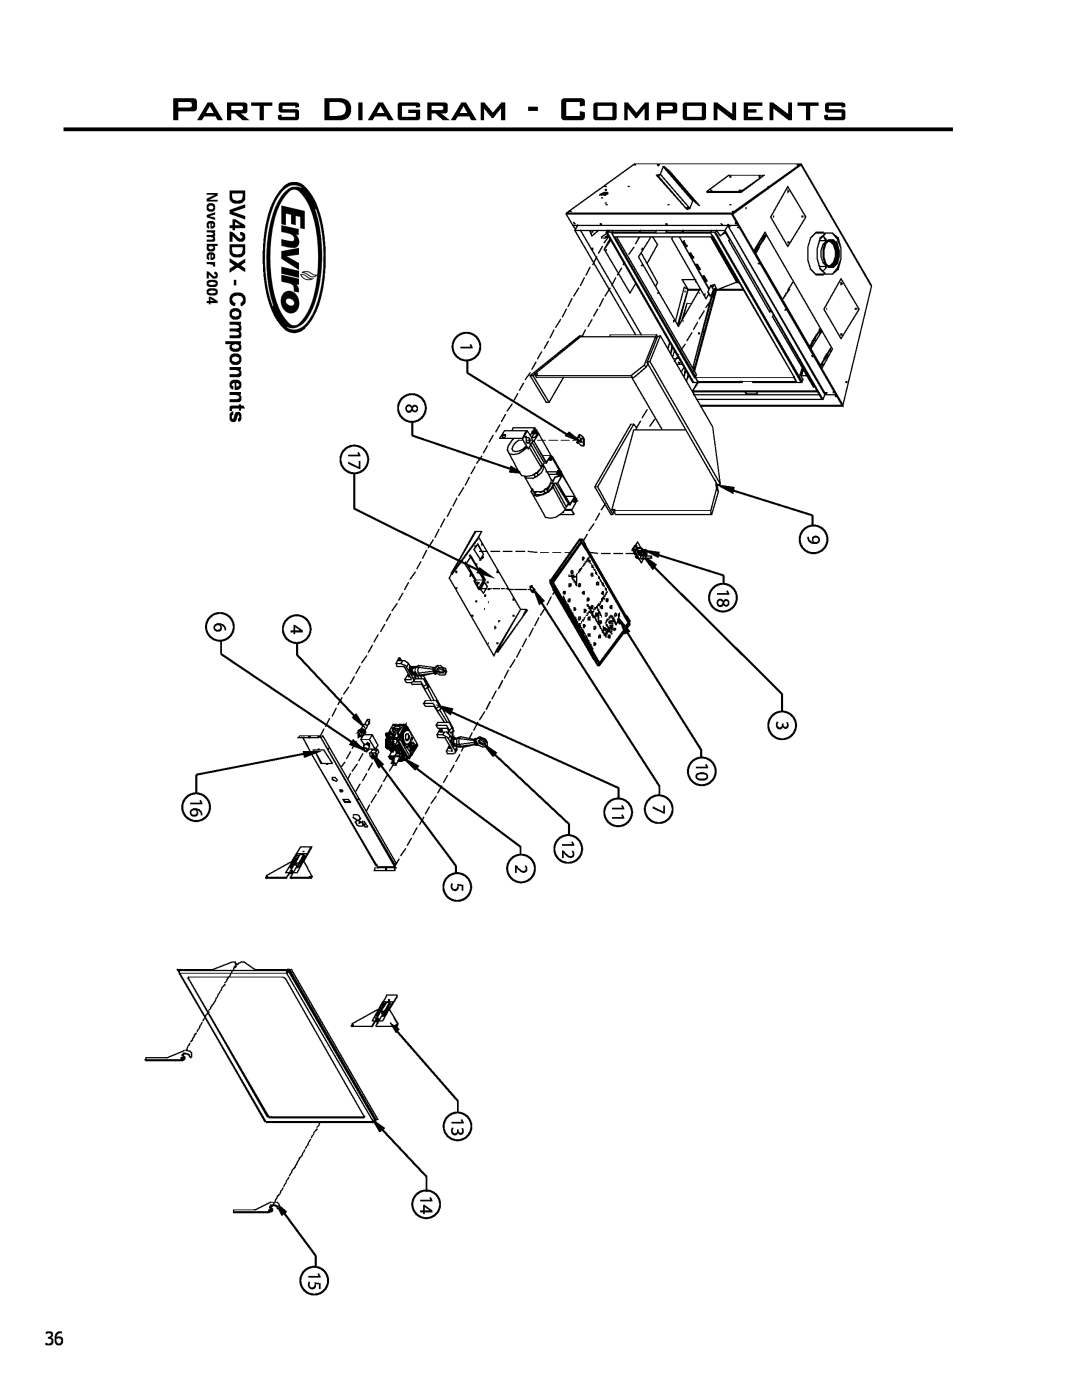 Enviro C-11278, C-10078, 50-645 owner manual PartsomponentsC, Diagram, enop moC- XD24VD, 9 81 1, r eb mevoN, 2004 